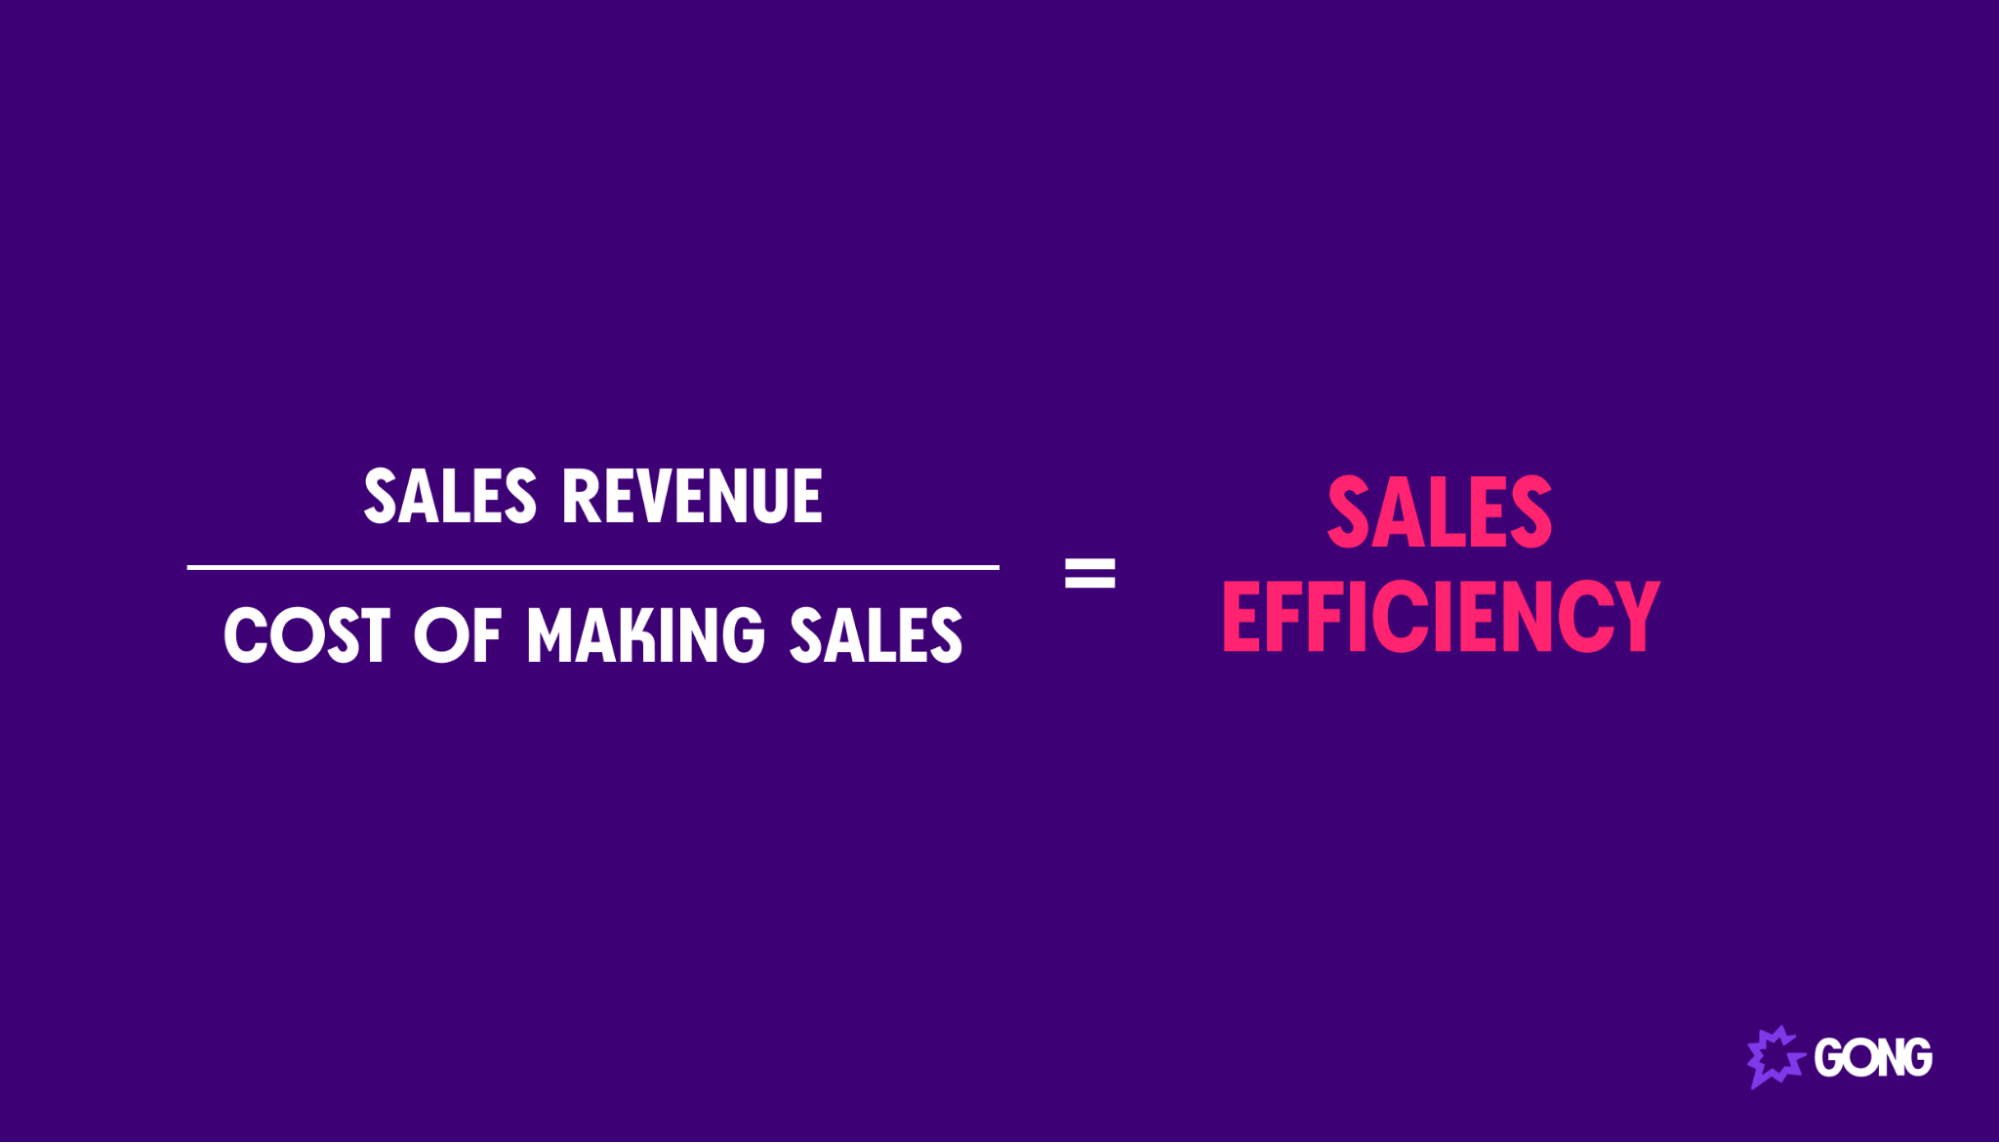 Sales Revenue / Cost of Making Sales = Sales Efficiency